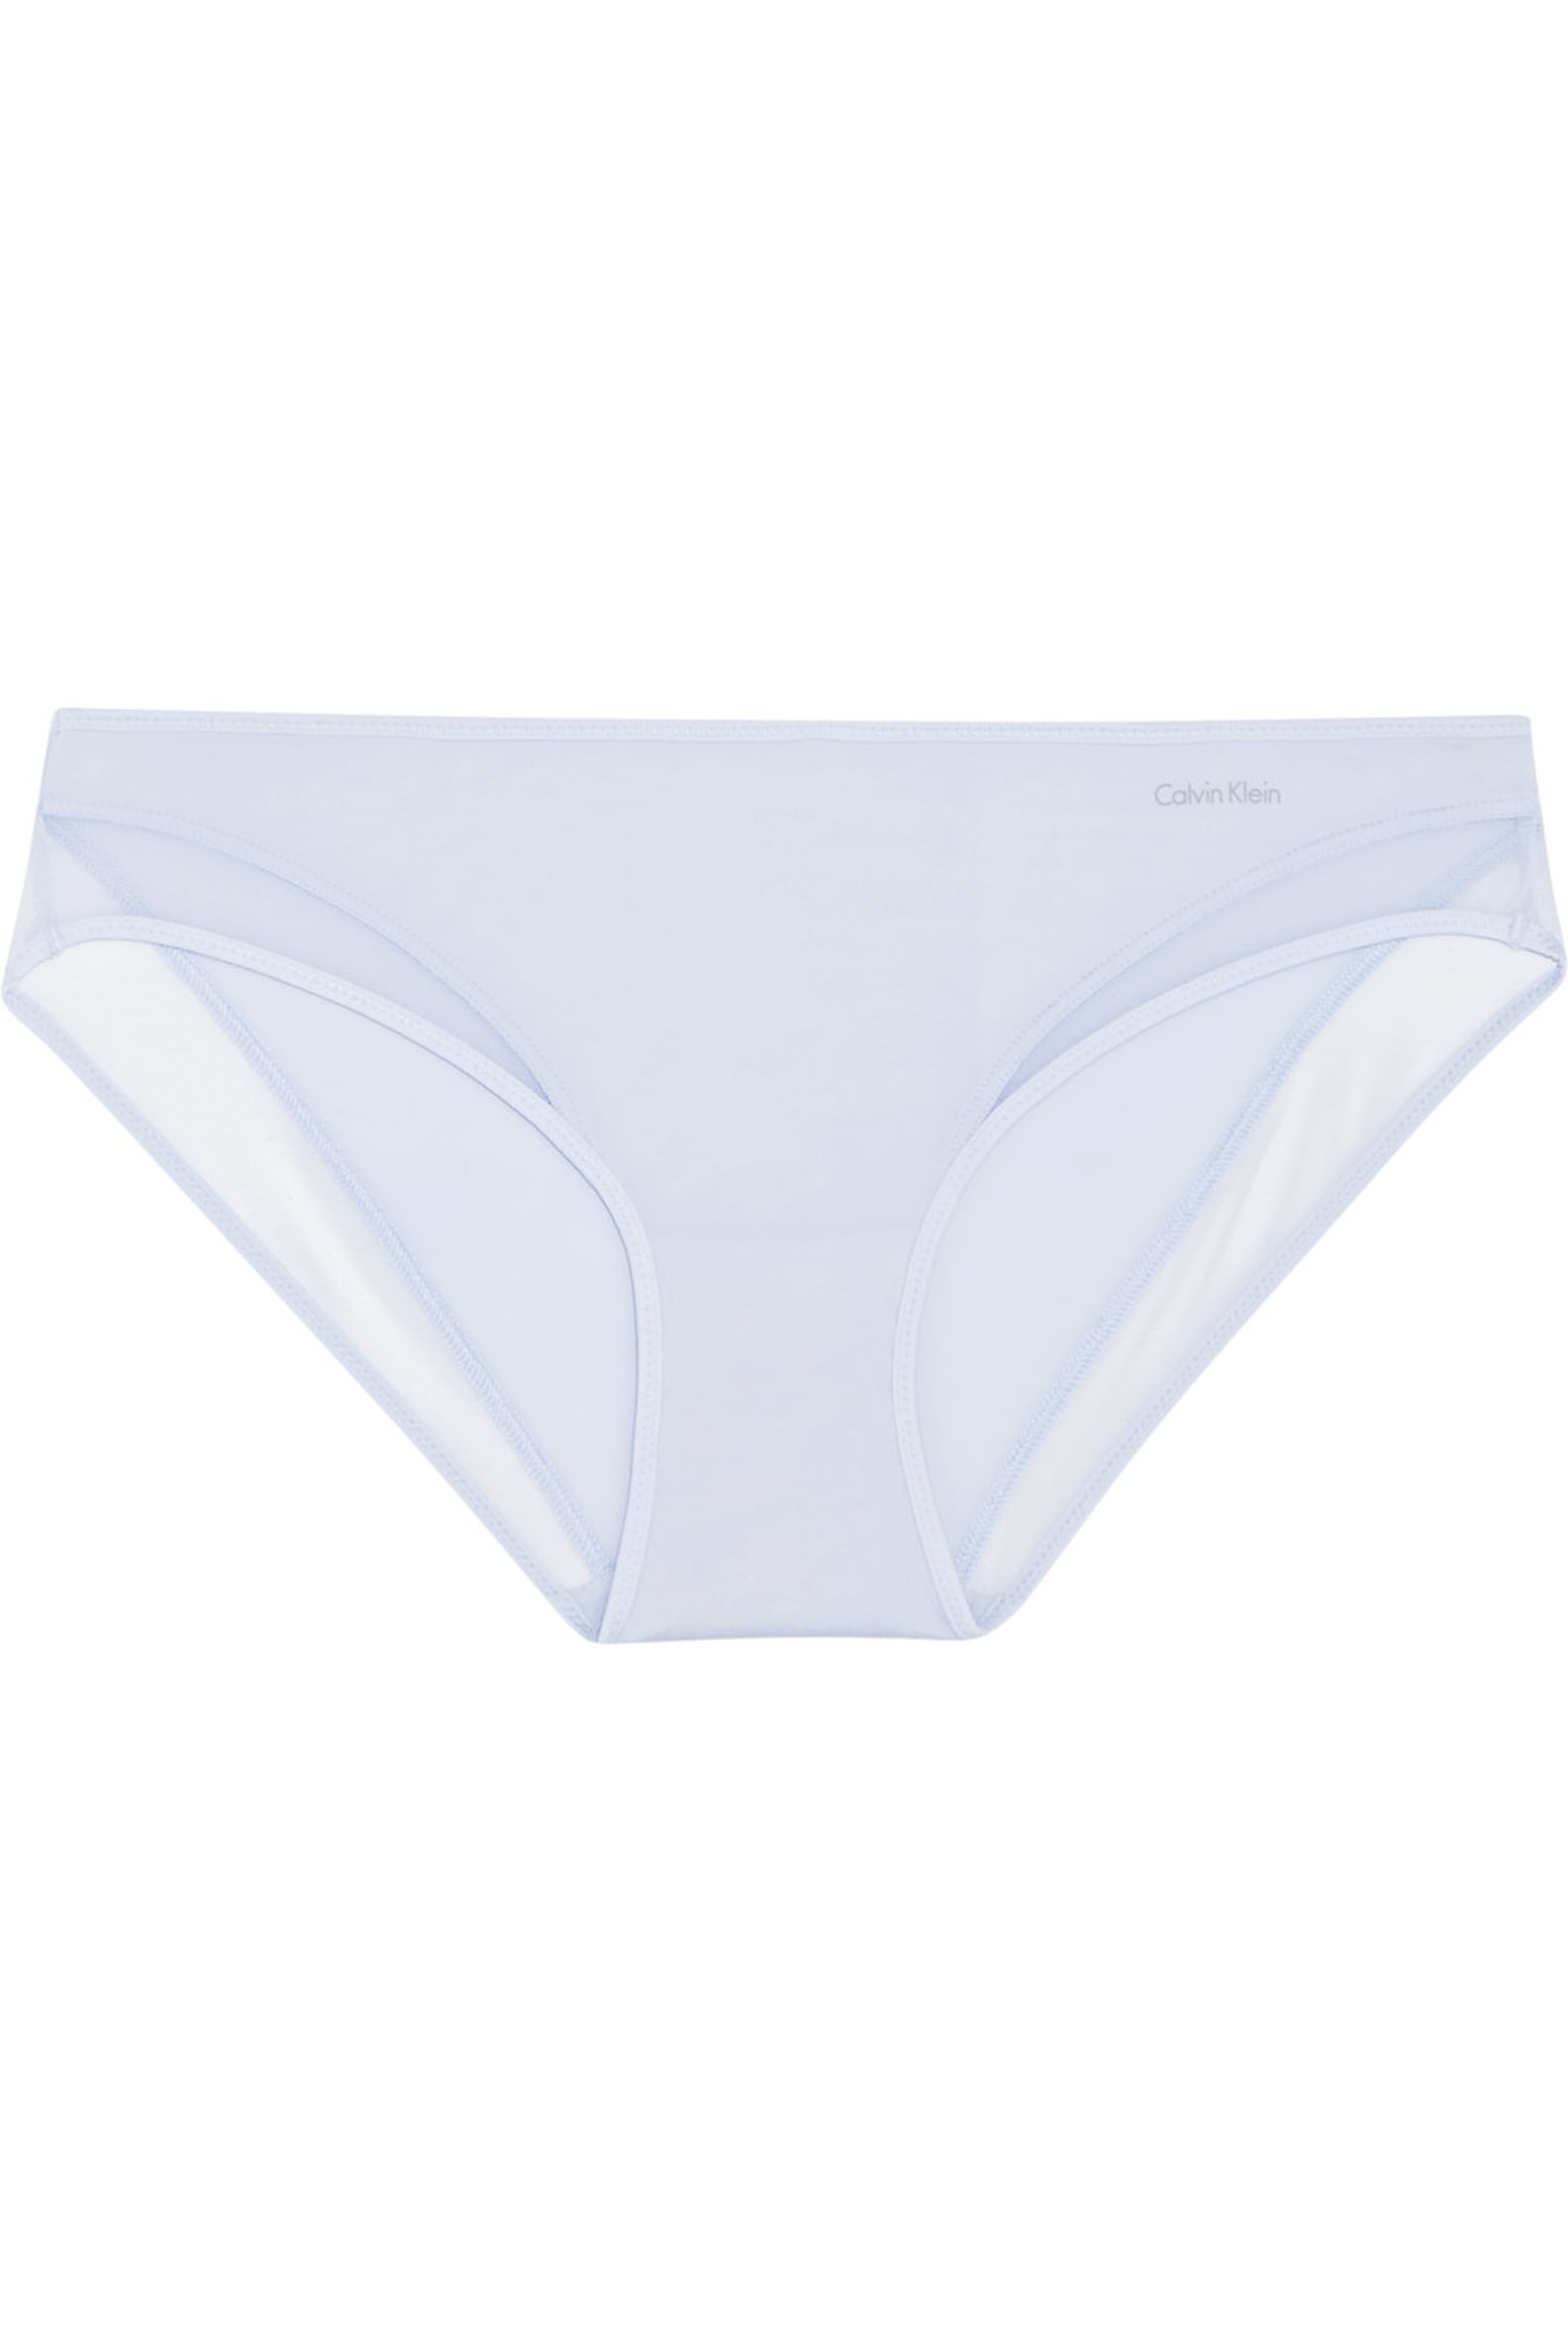 Comfortable Underwear For Summer | POPSUGAR Fashion